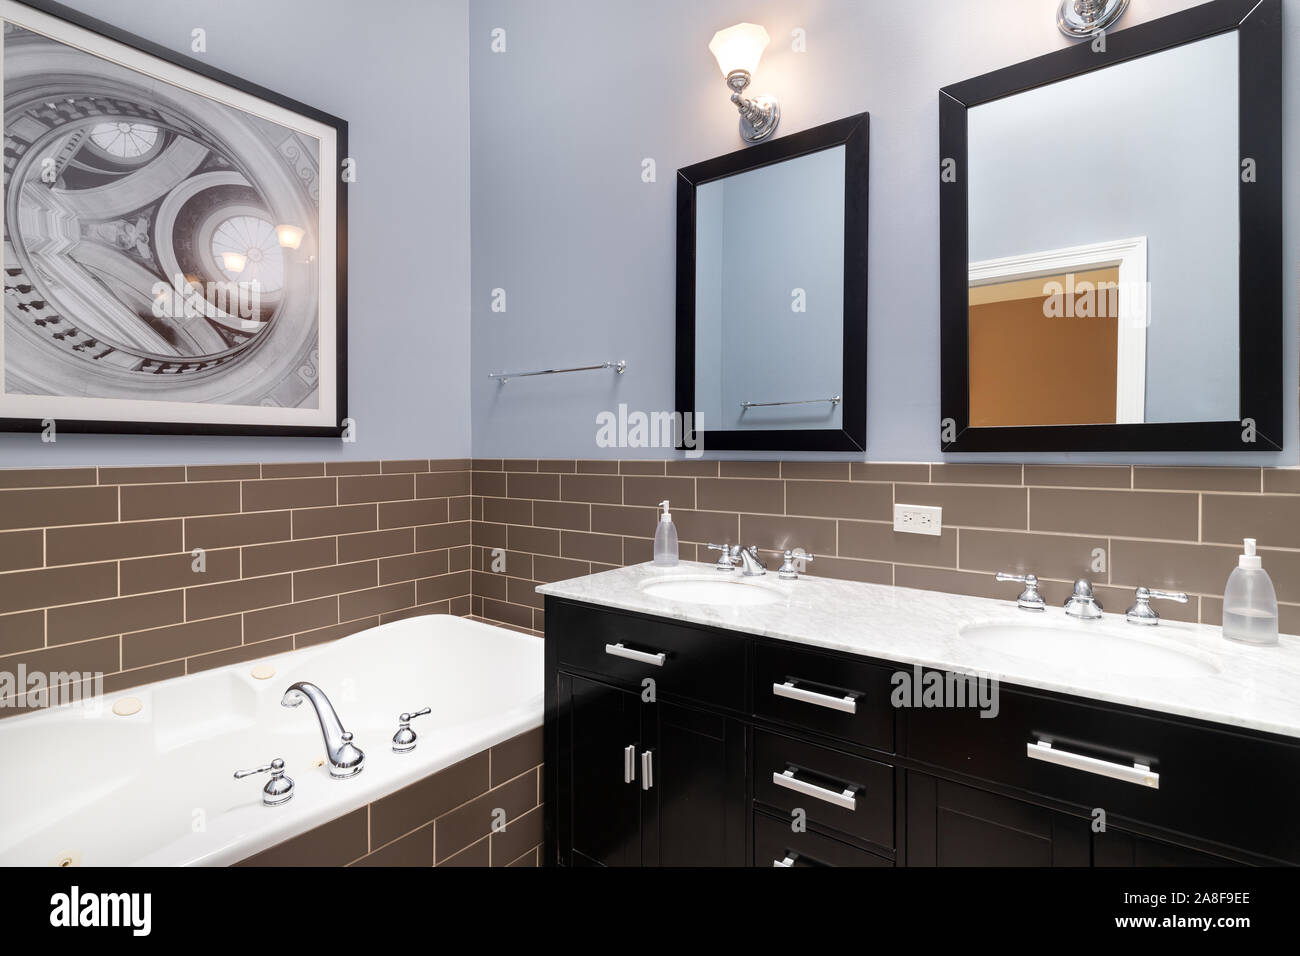 Un mur de la salle de bain bleu avec carreaux métro brun entourant la salle de bain, un meuble-lavabo de couleur sombre, et une photo sur le dessus de la baignoire. Banque D'Images